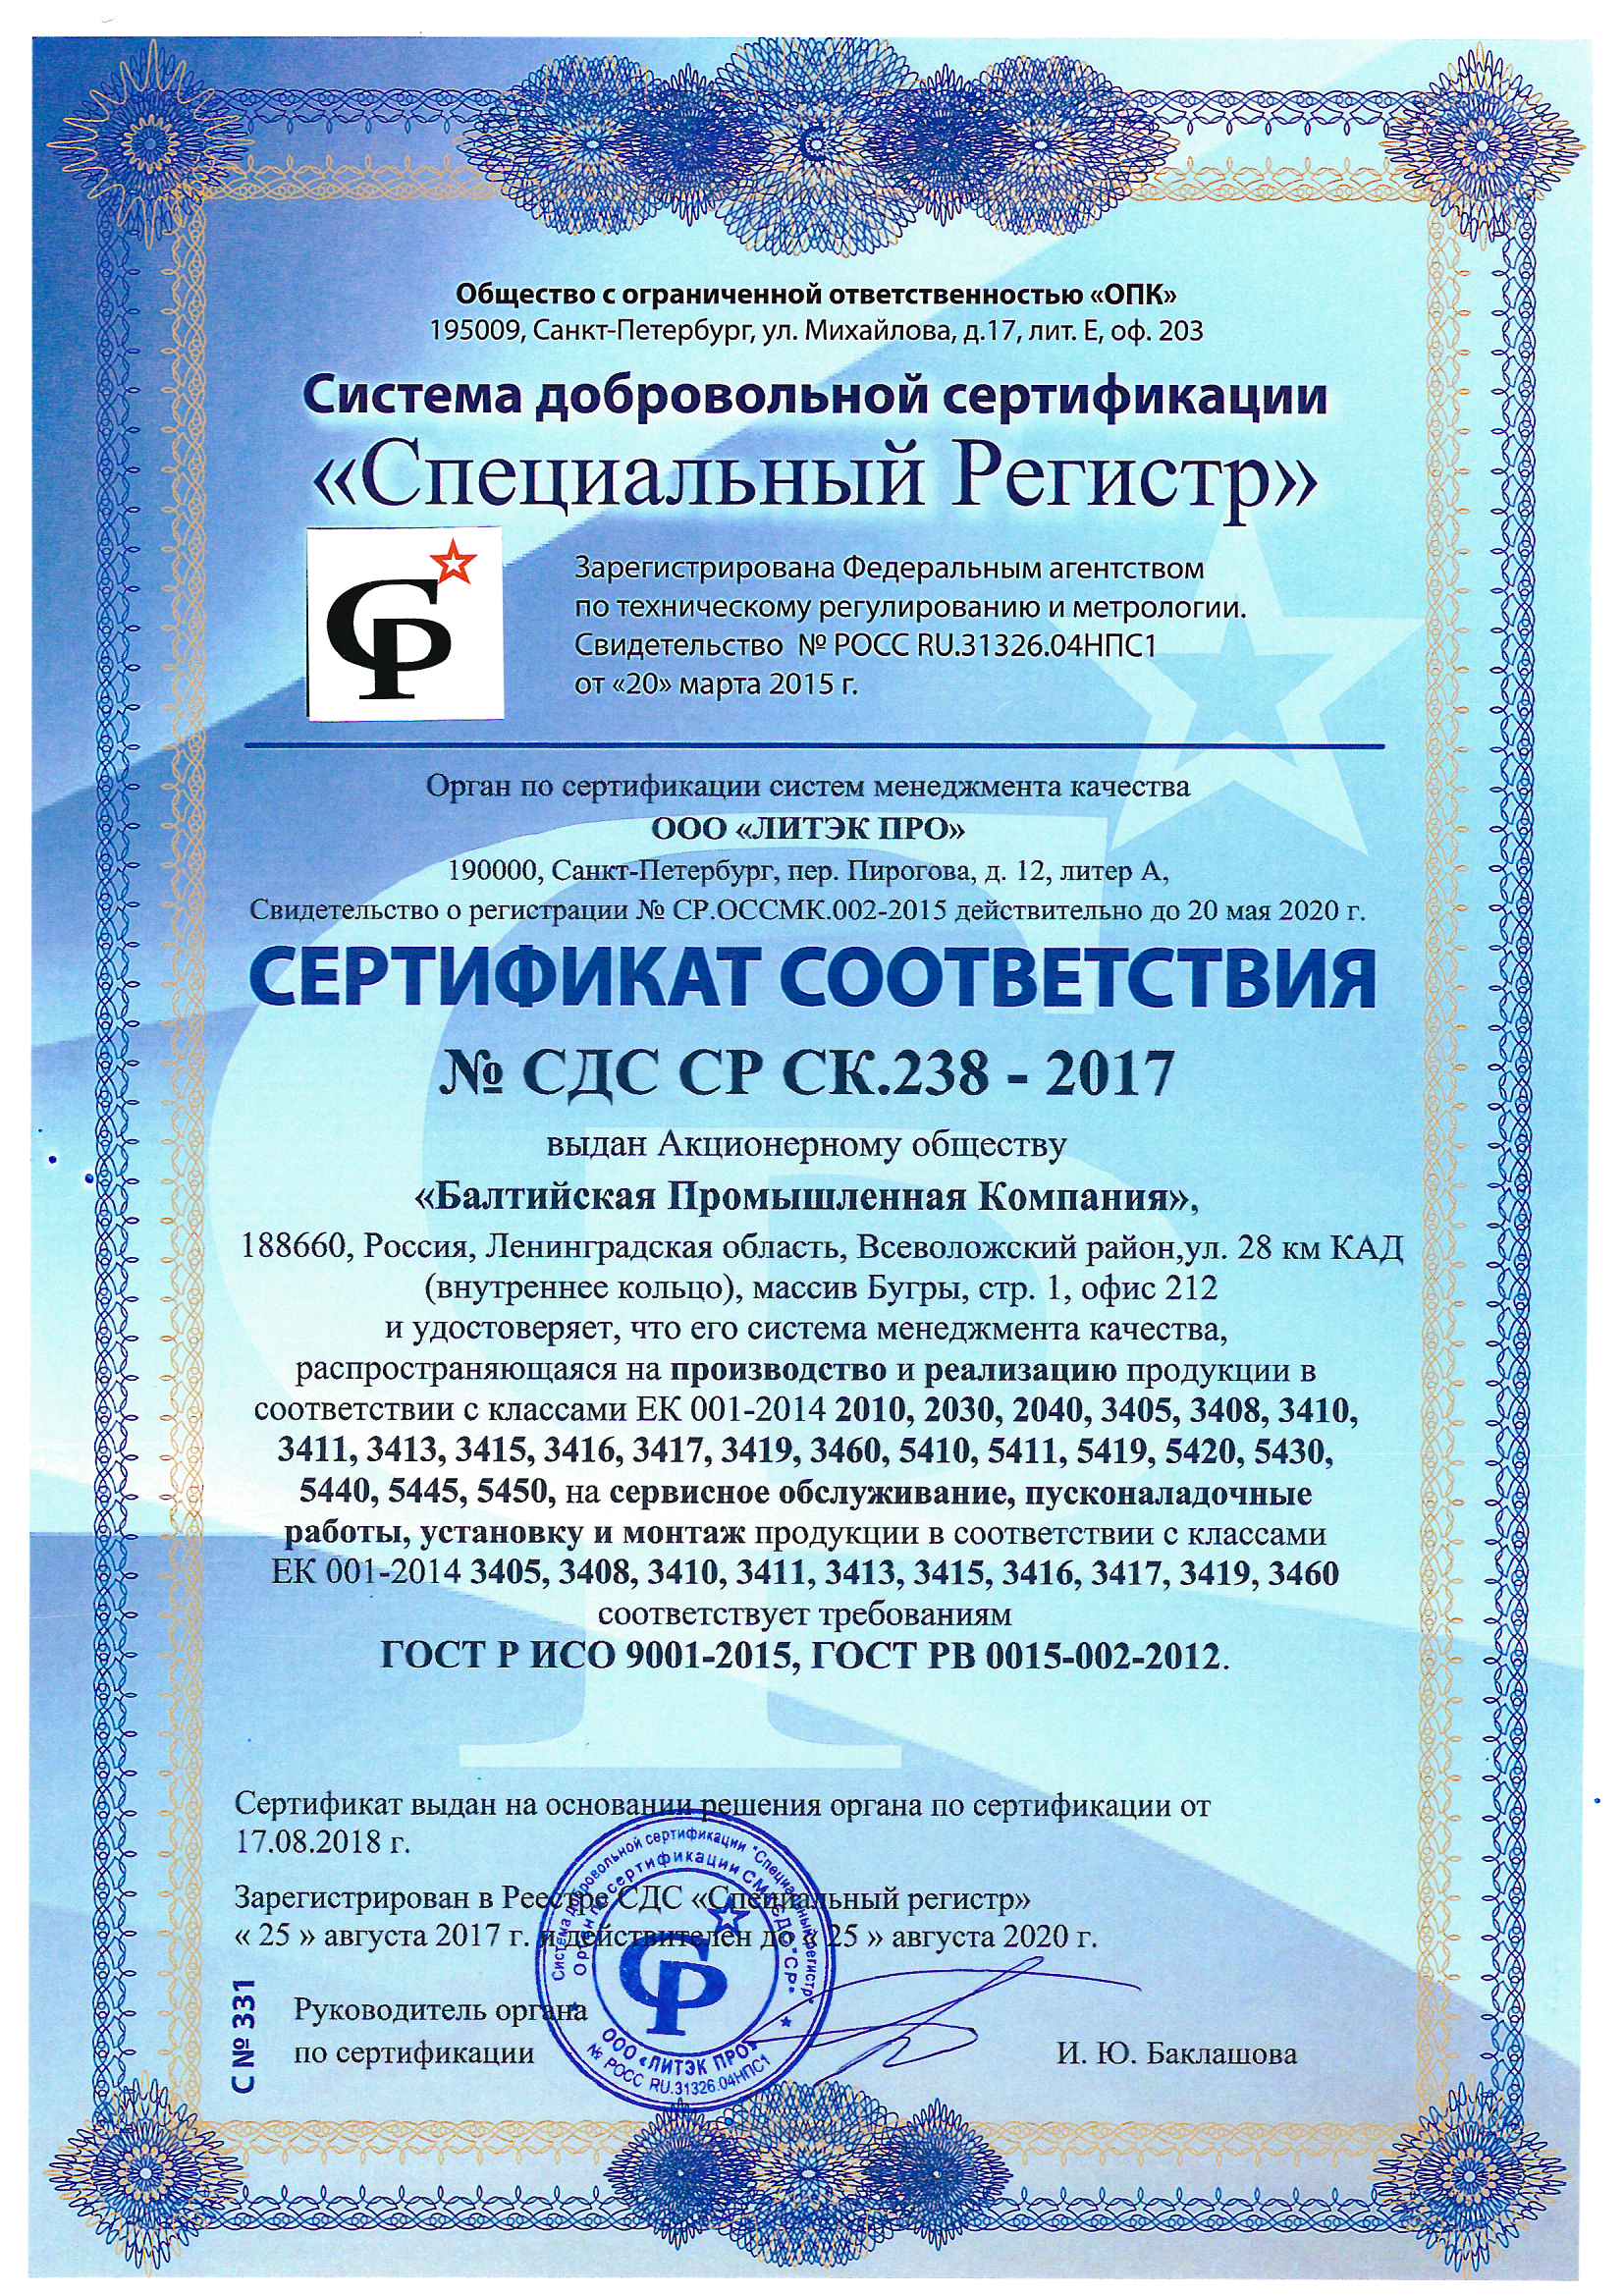  Сертификат СМК